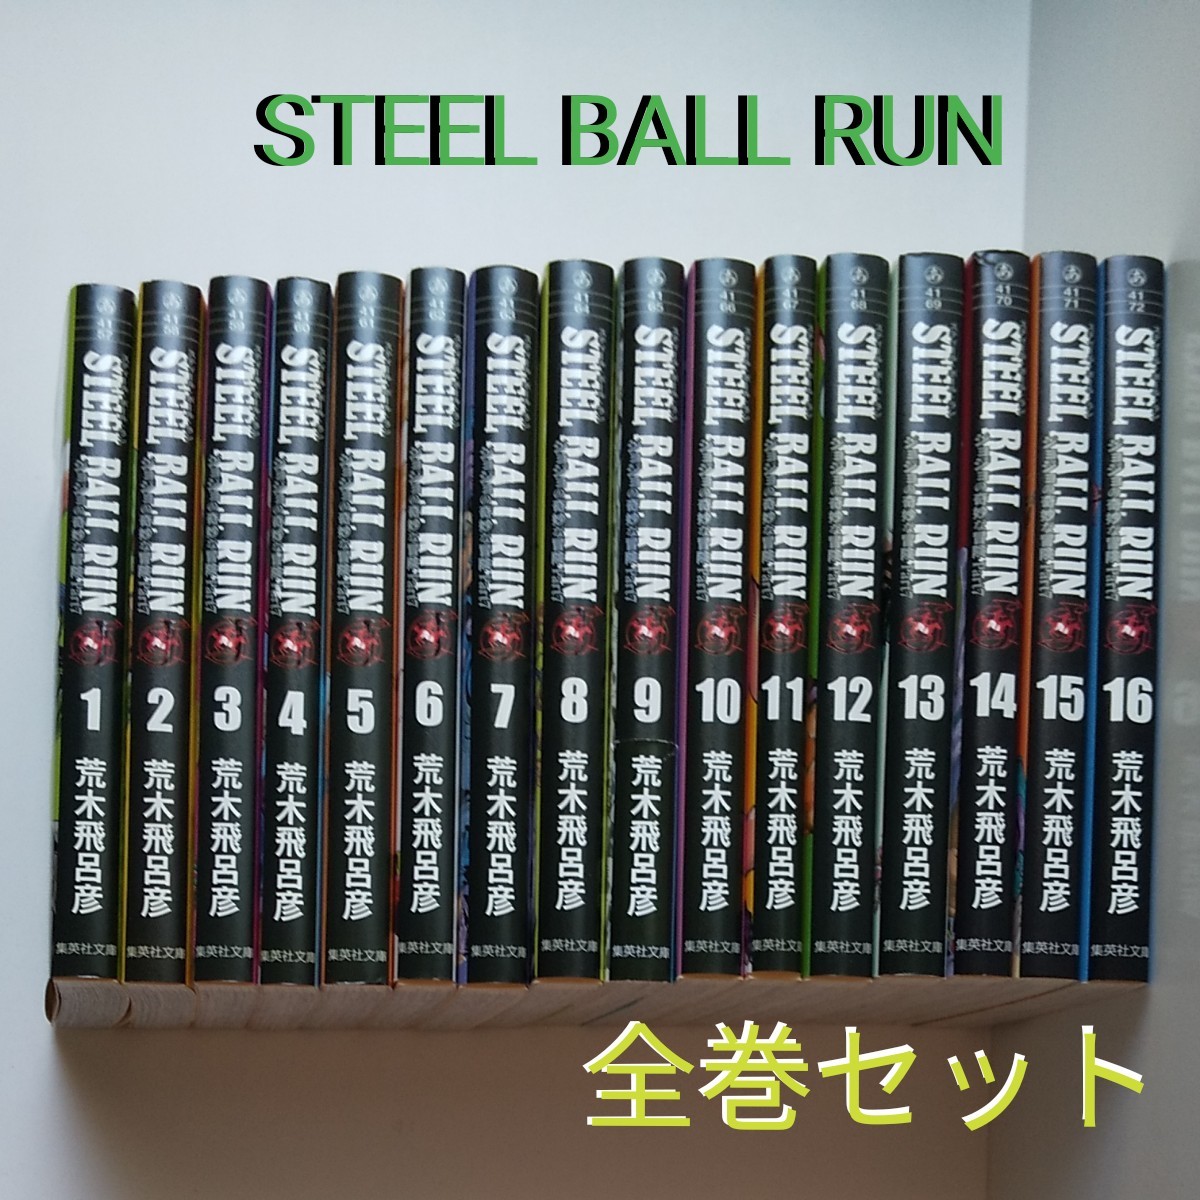 世界的に有名な コミック文庫 Steel Ball Run ジョジョの奇妙な冒険 Part7 全巻セット 荒木飛呂彦